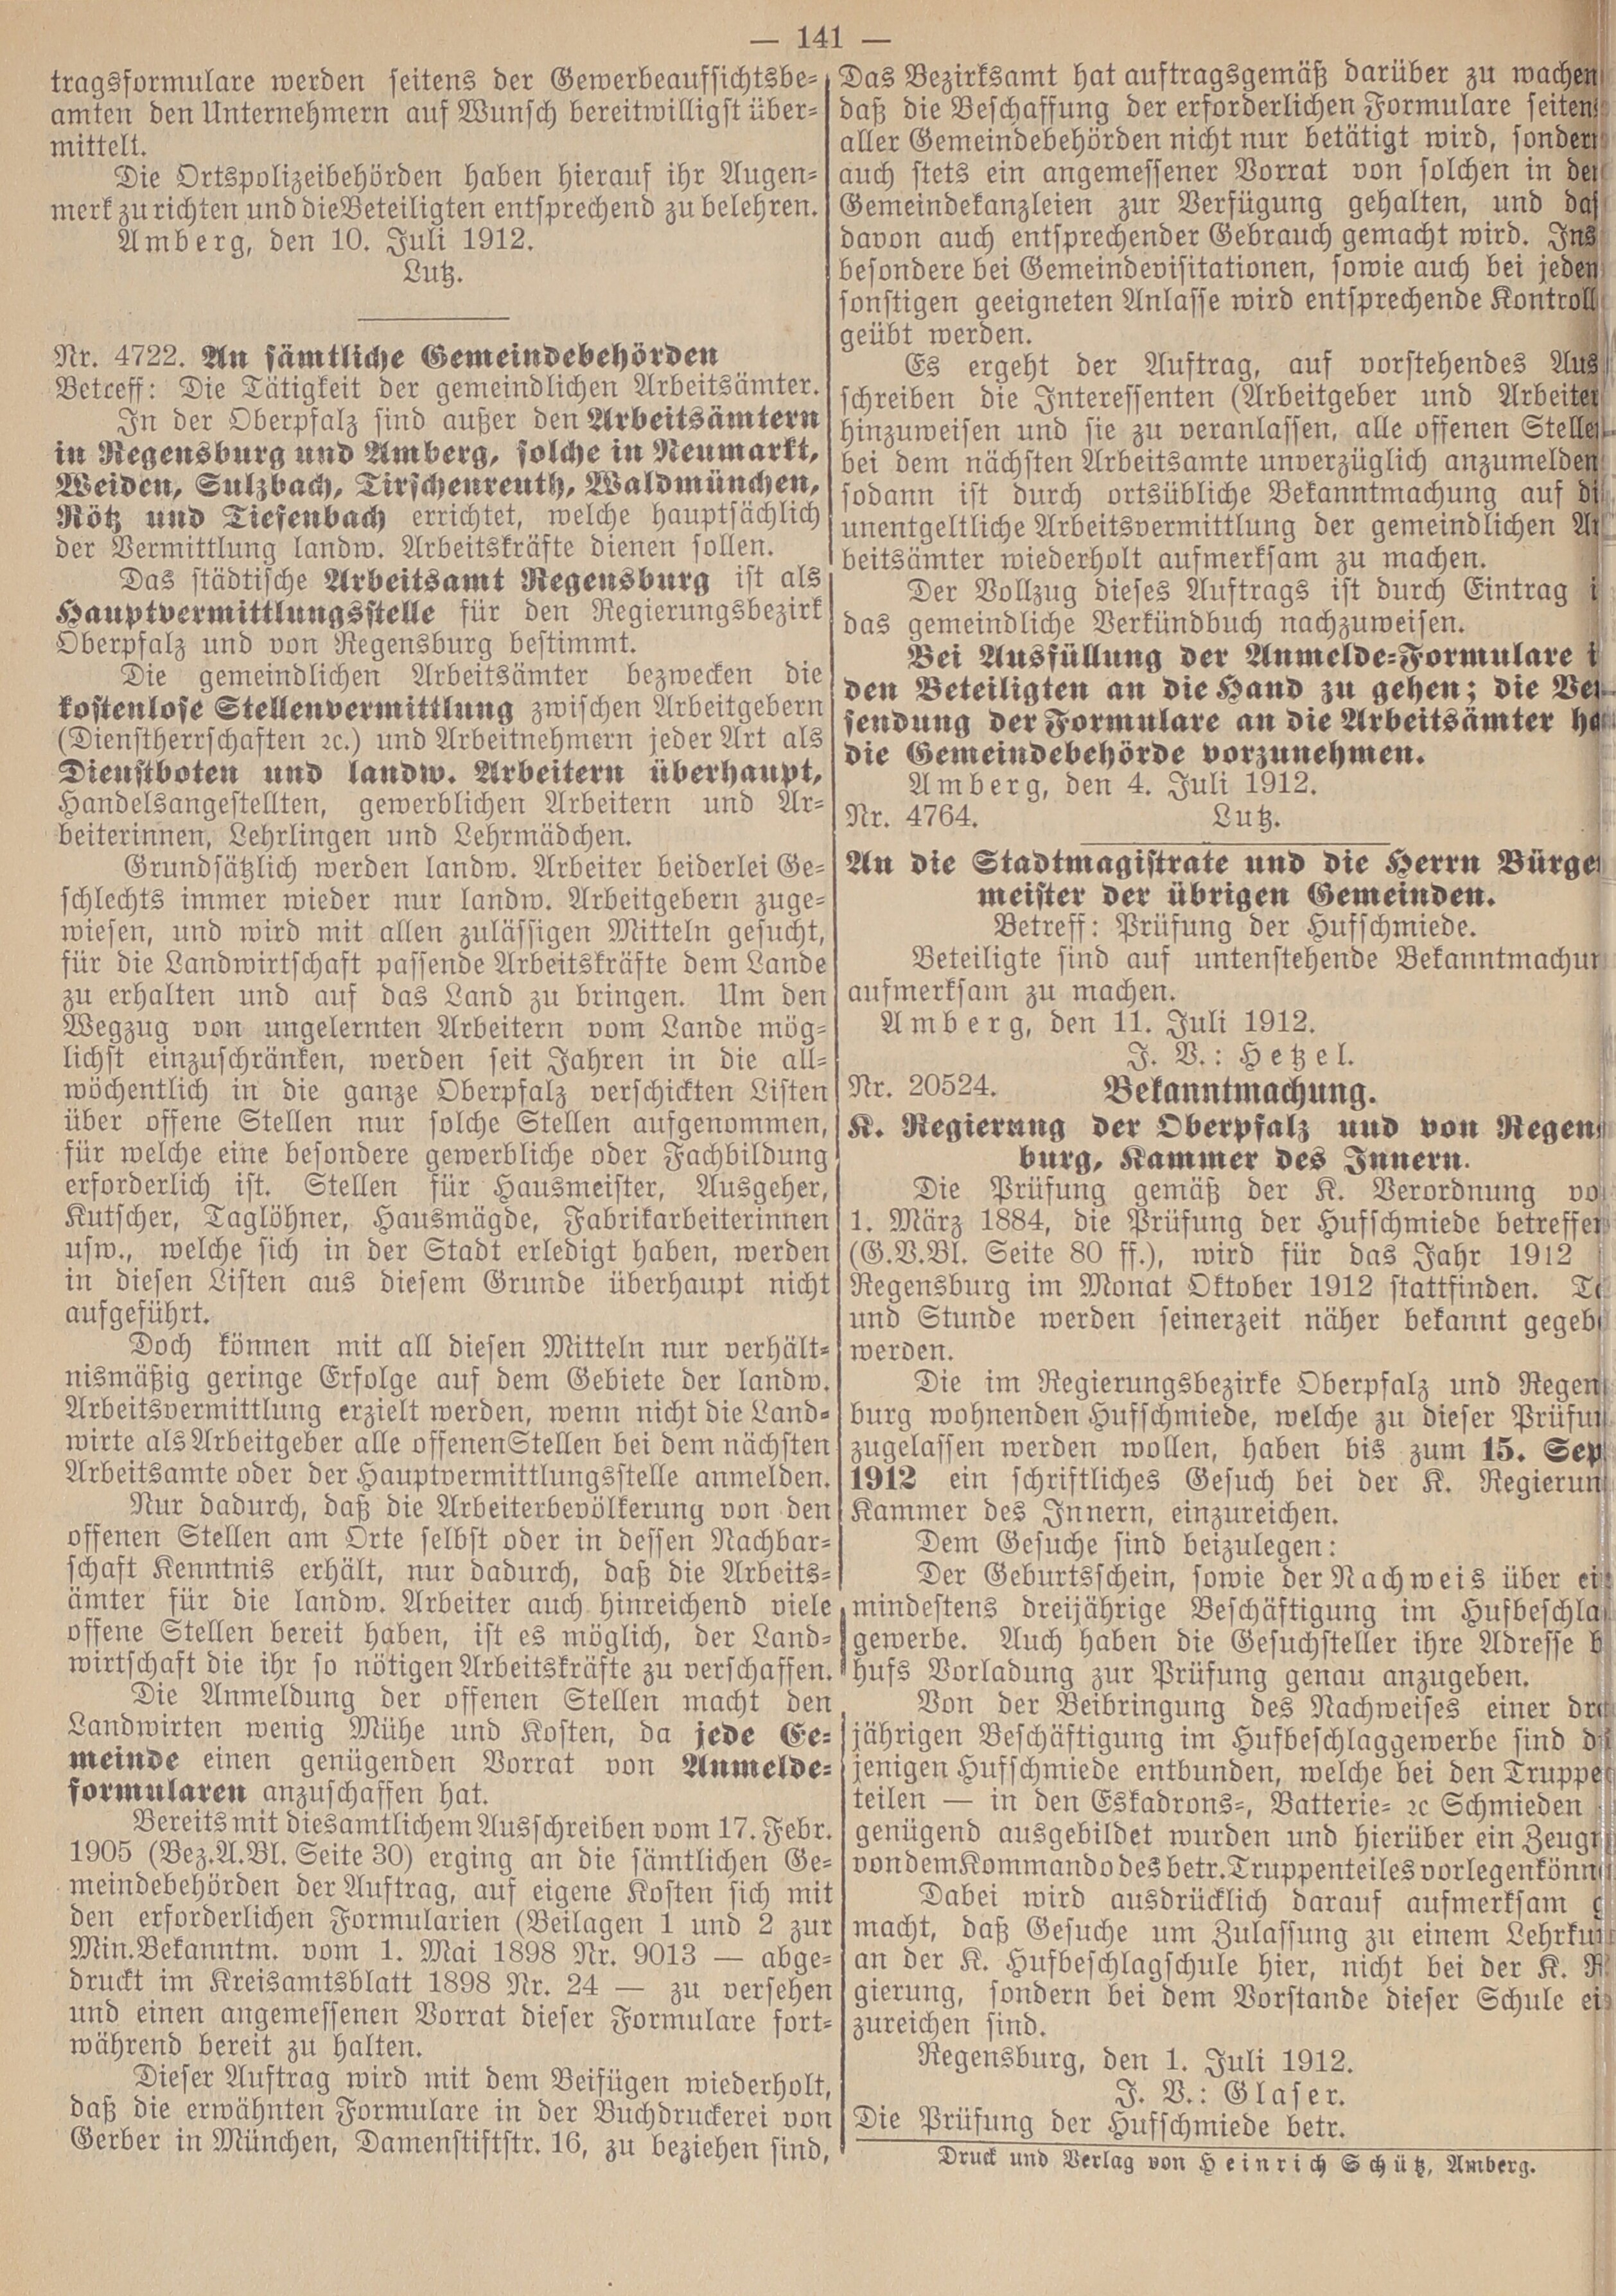 4. amtsblatt-amberg-1912-07-27-n36_4100